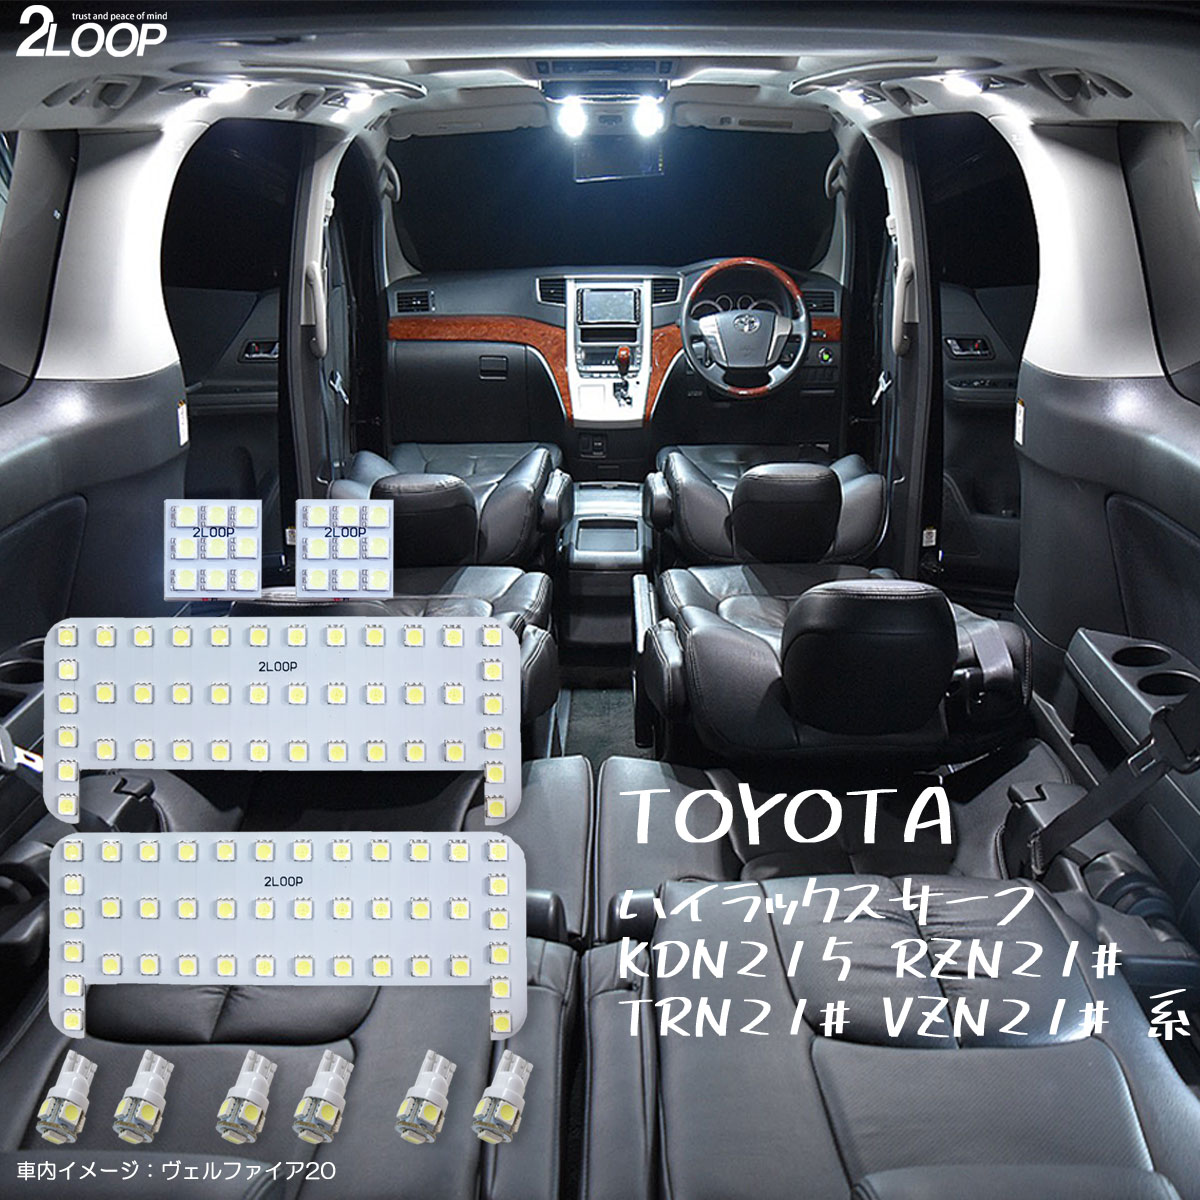 ハイラックス サーフ 210系 215系 LED ルームランプ 綺麗な光 車検対応 車種専用設計 6000Kクラスの 3チップSMD10点【純白光】1年保証